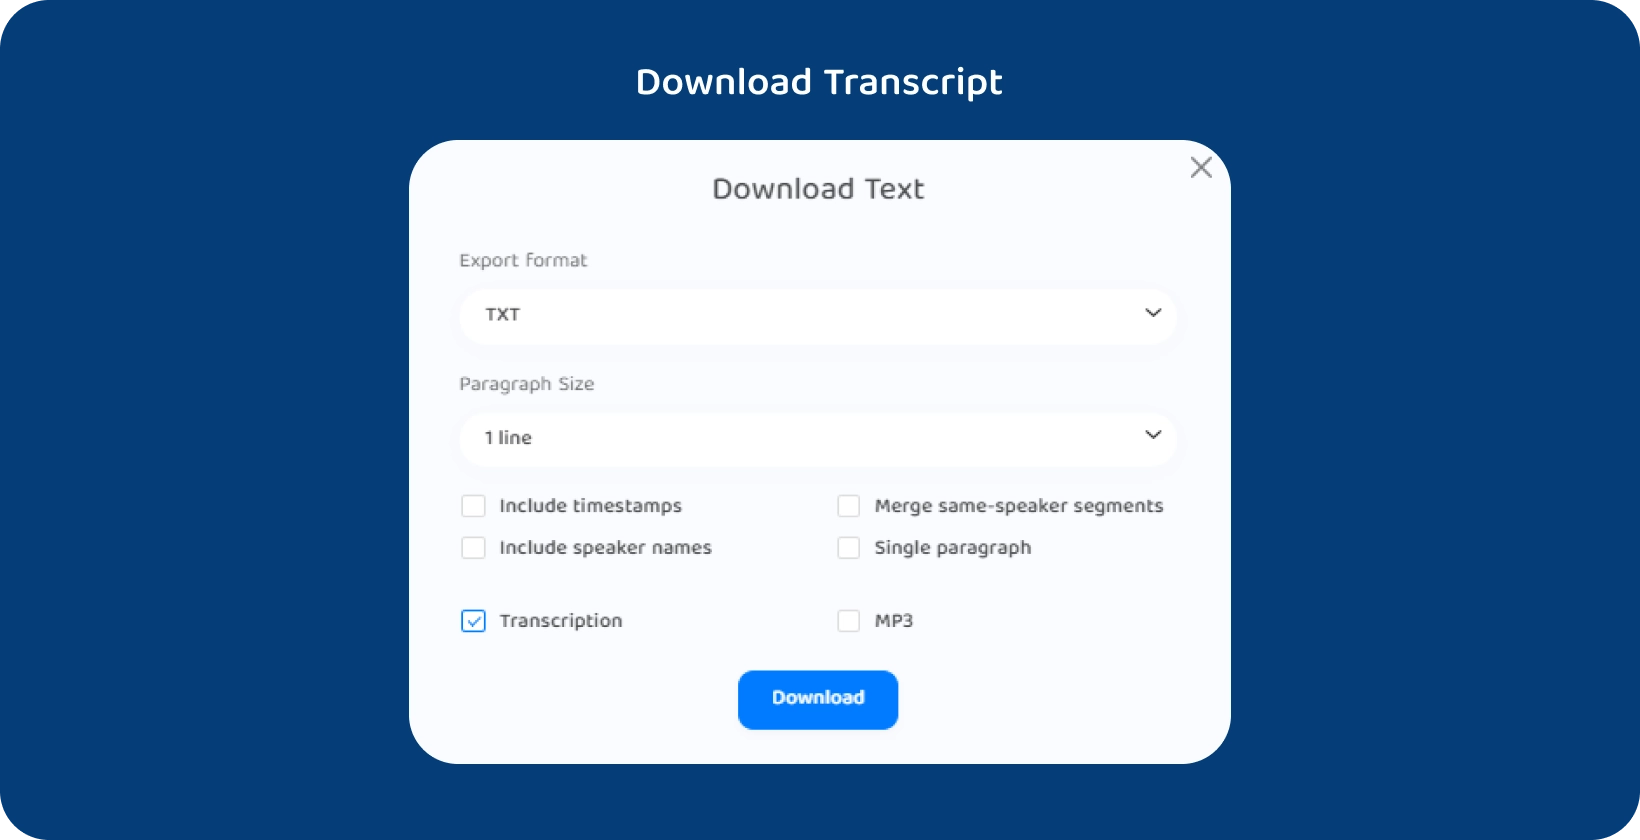 Transkriptor interface mostrando opções para baixar o texto de uma aula transcrita.